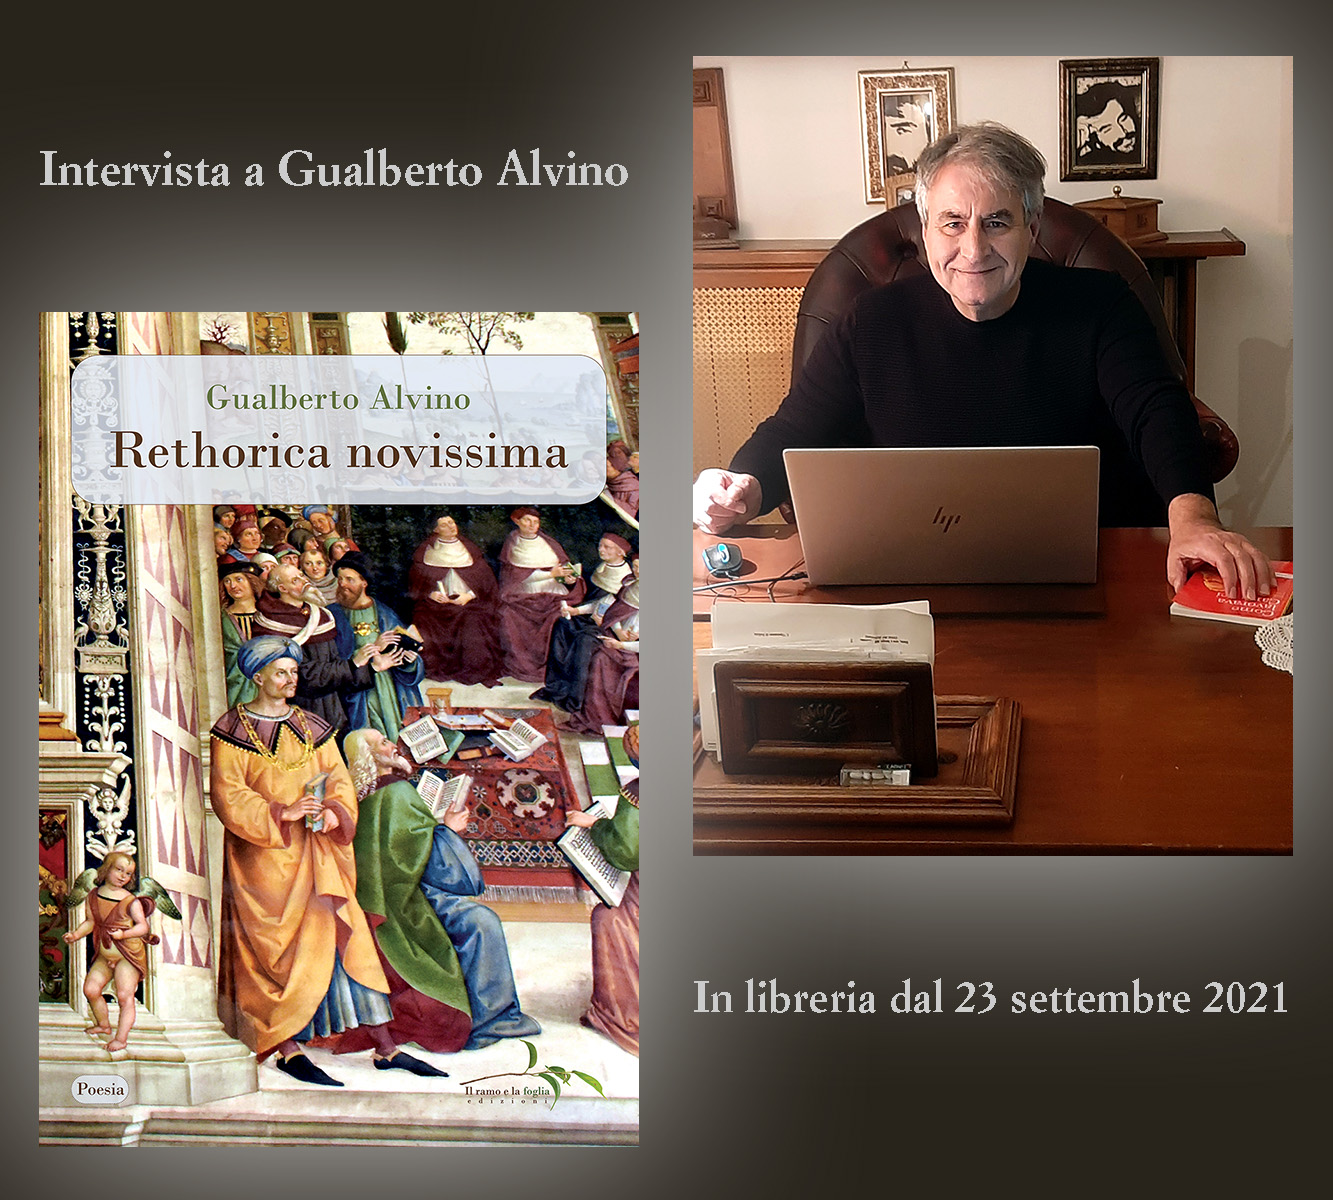 Copertina di “Rethorica novissima” e l’autore Gualberto Alvino